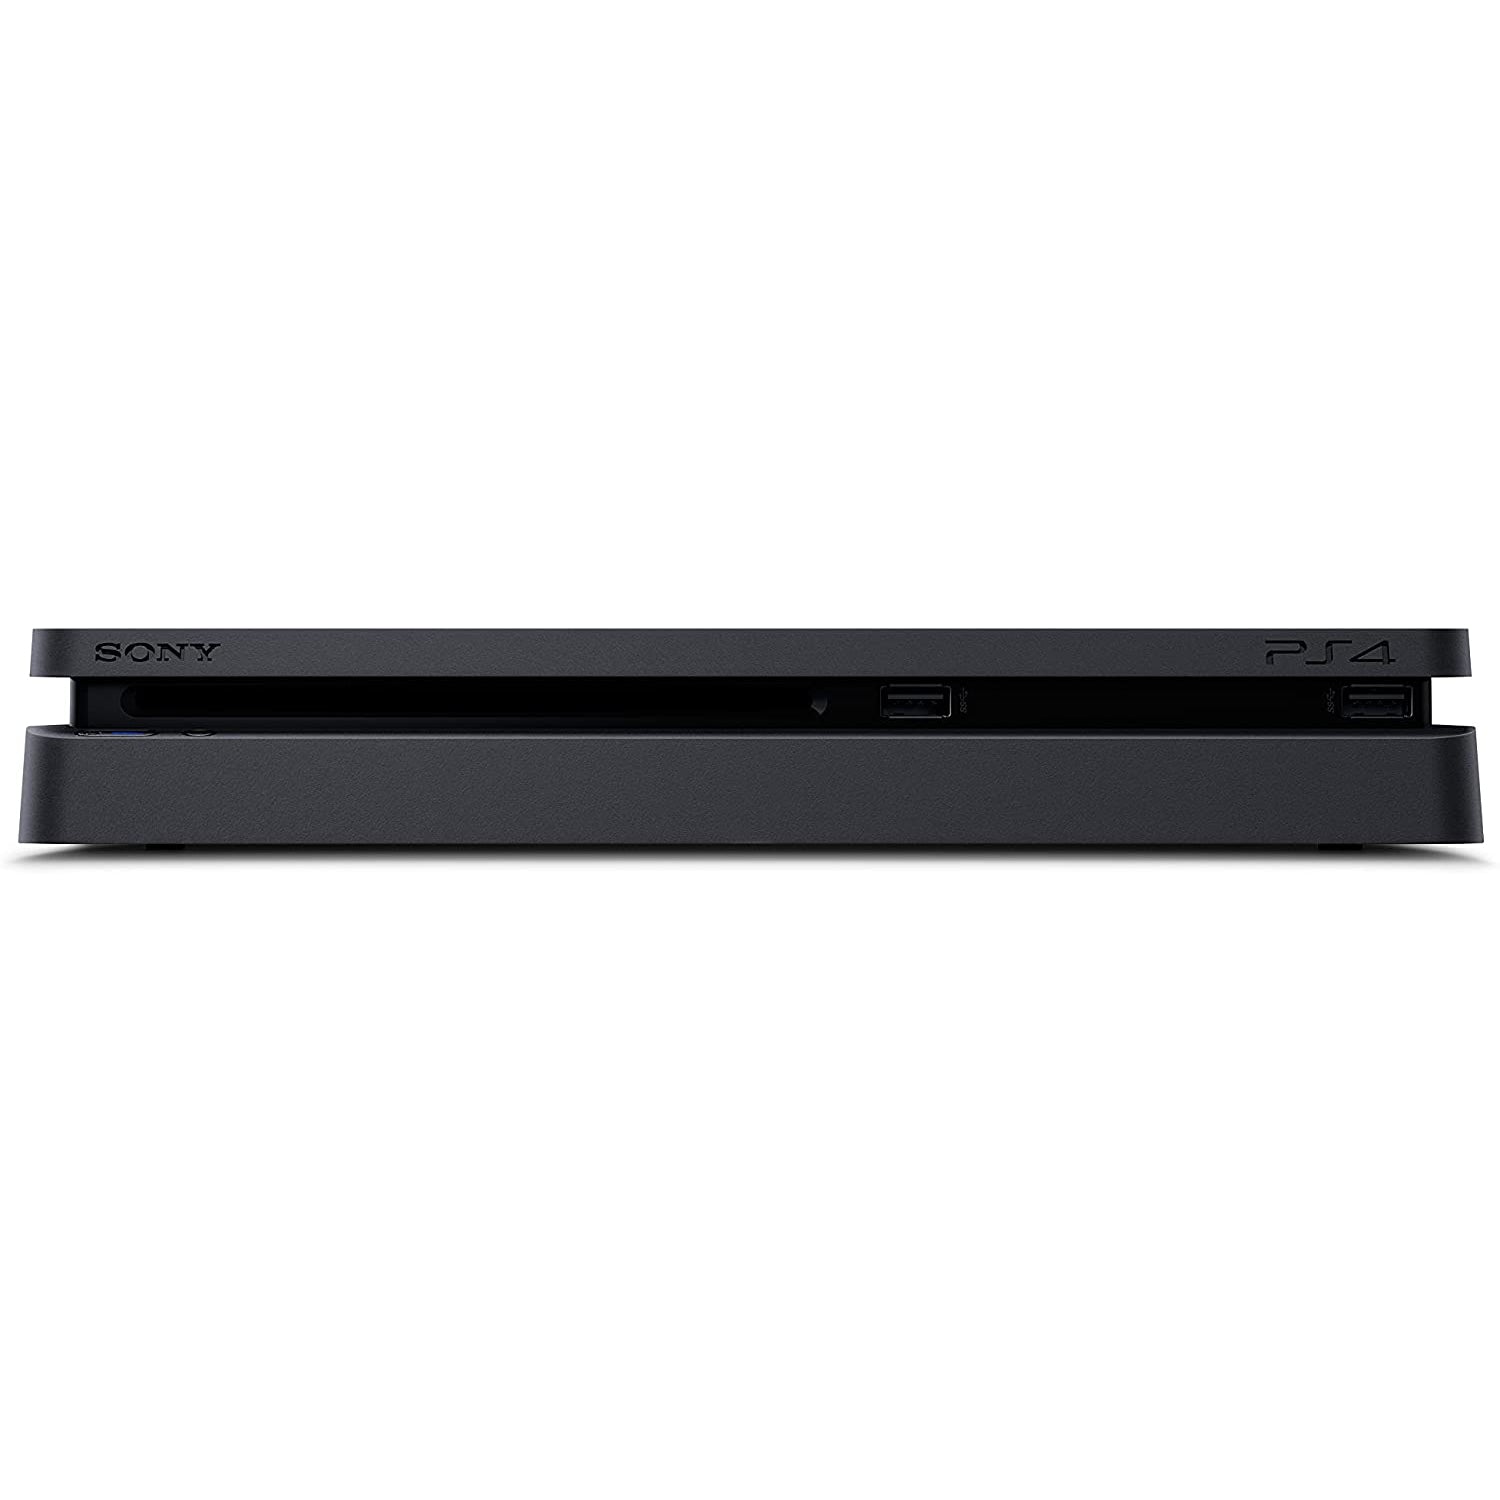 Sony-PlayStation-4-Slim-Console-500GB-4_4f977aac-71d2-4149-8ecf-6cb0c48c5a40